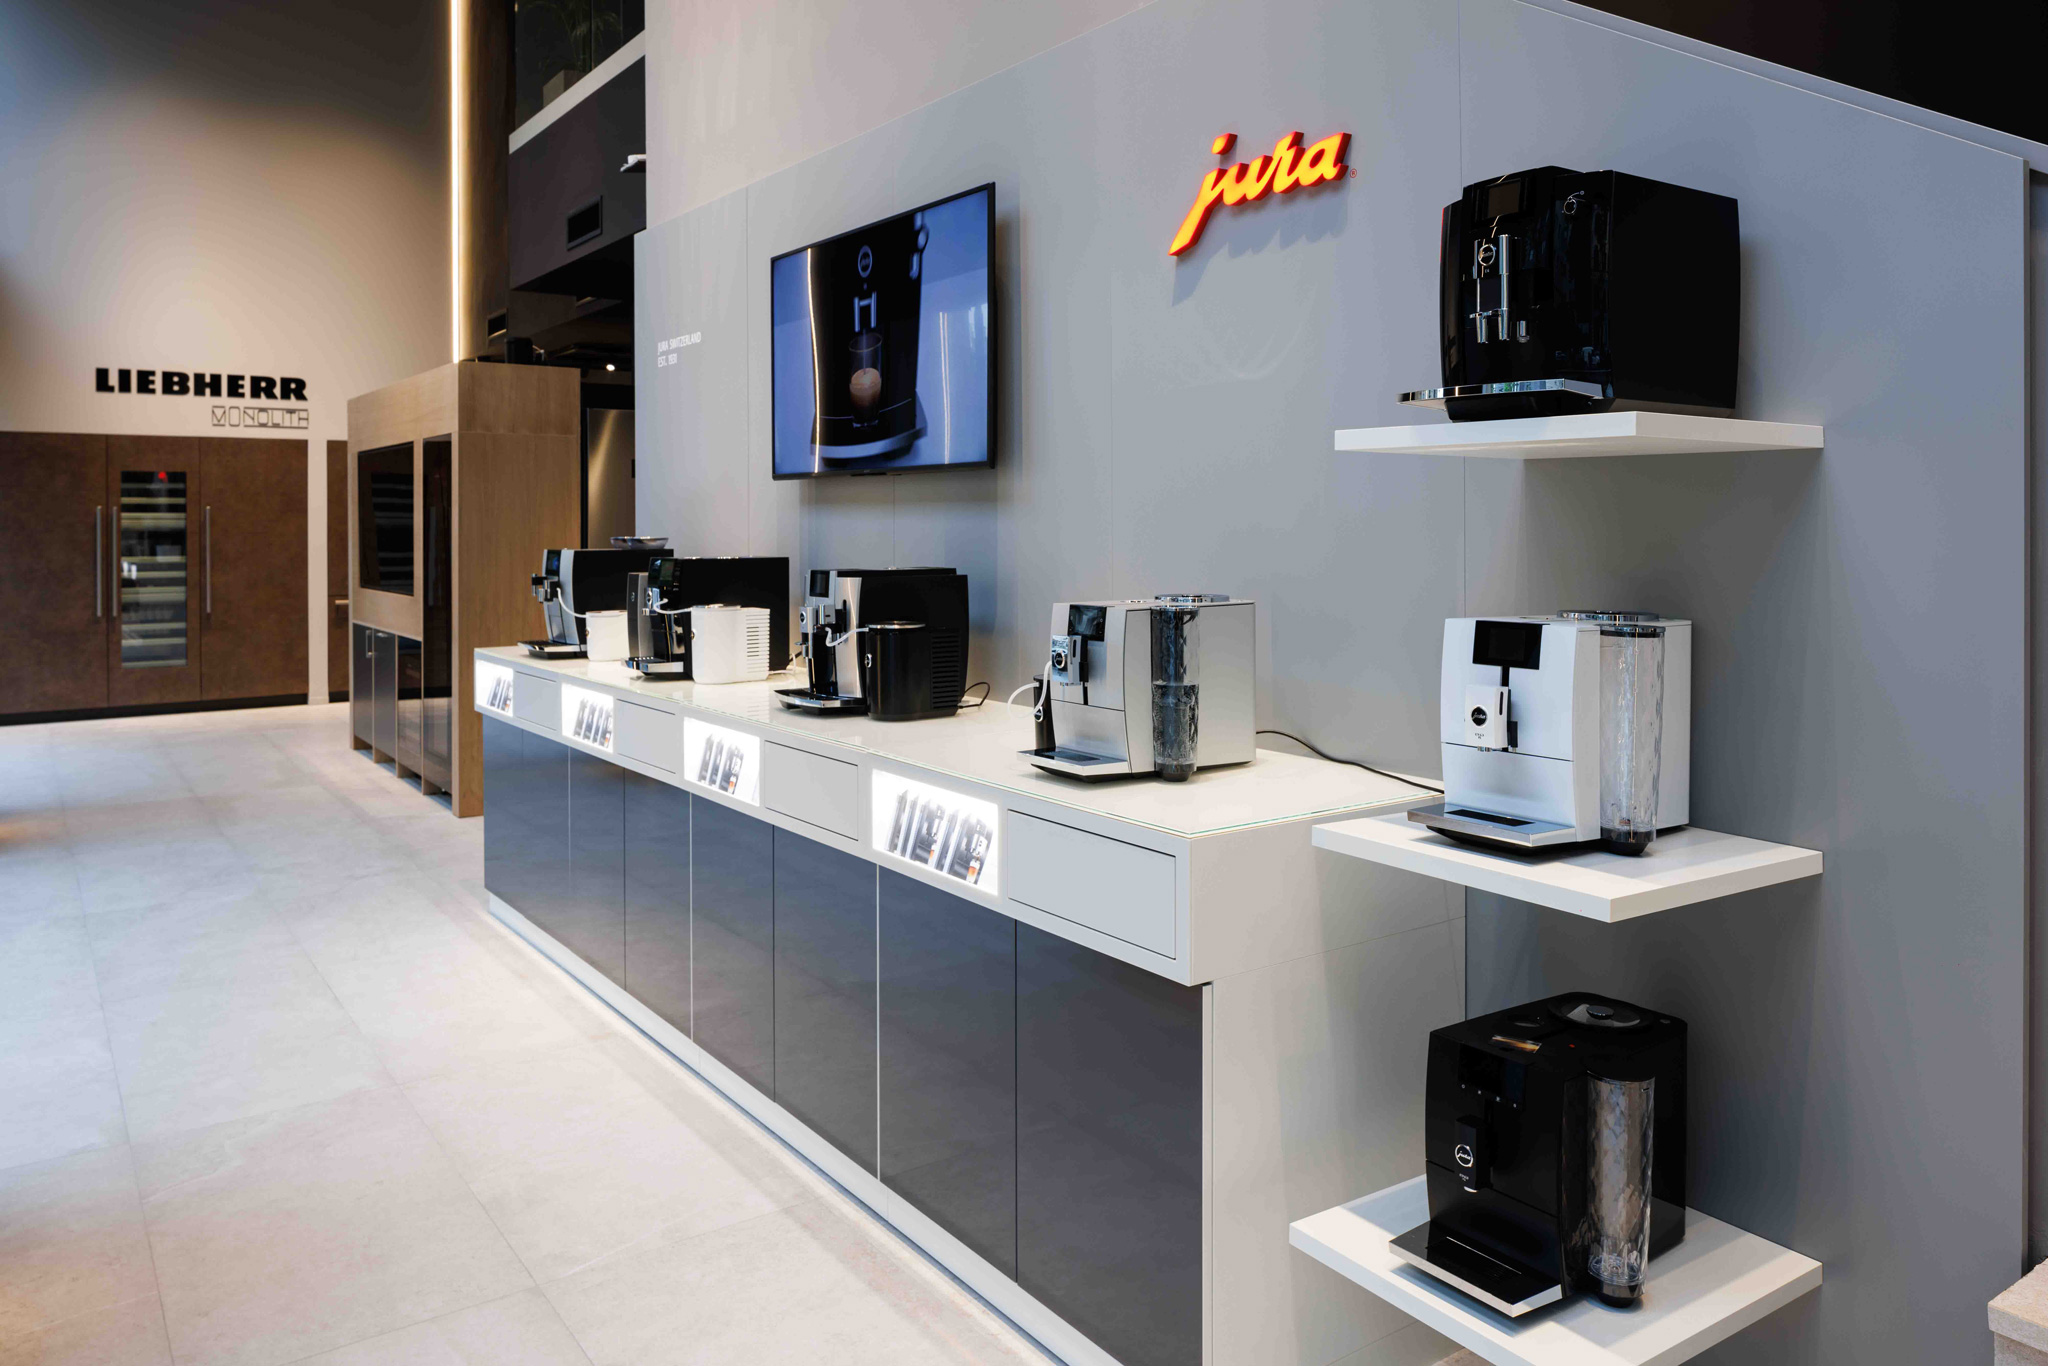 Macchine del caffe in showroom